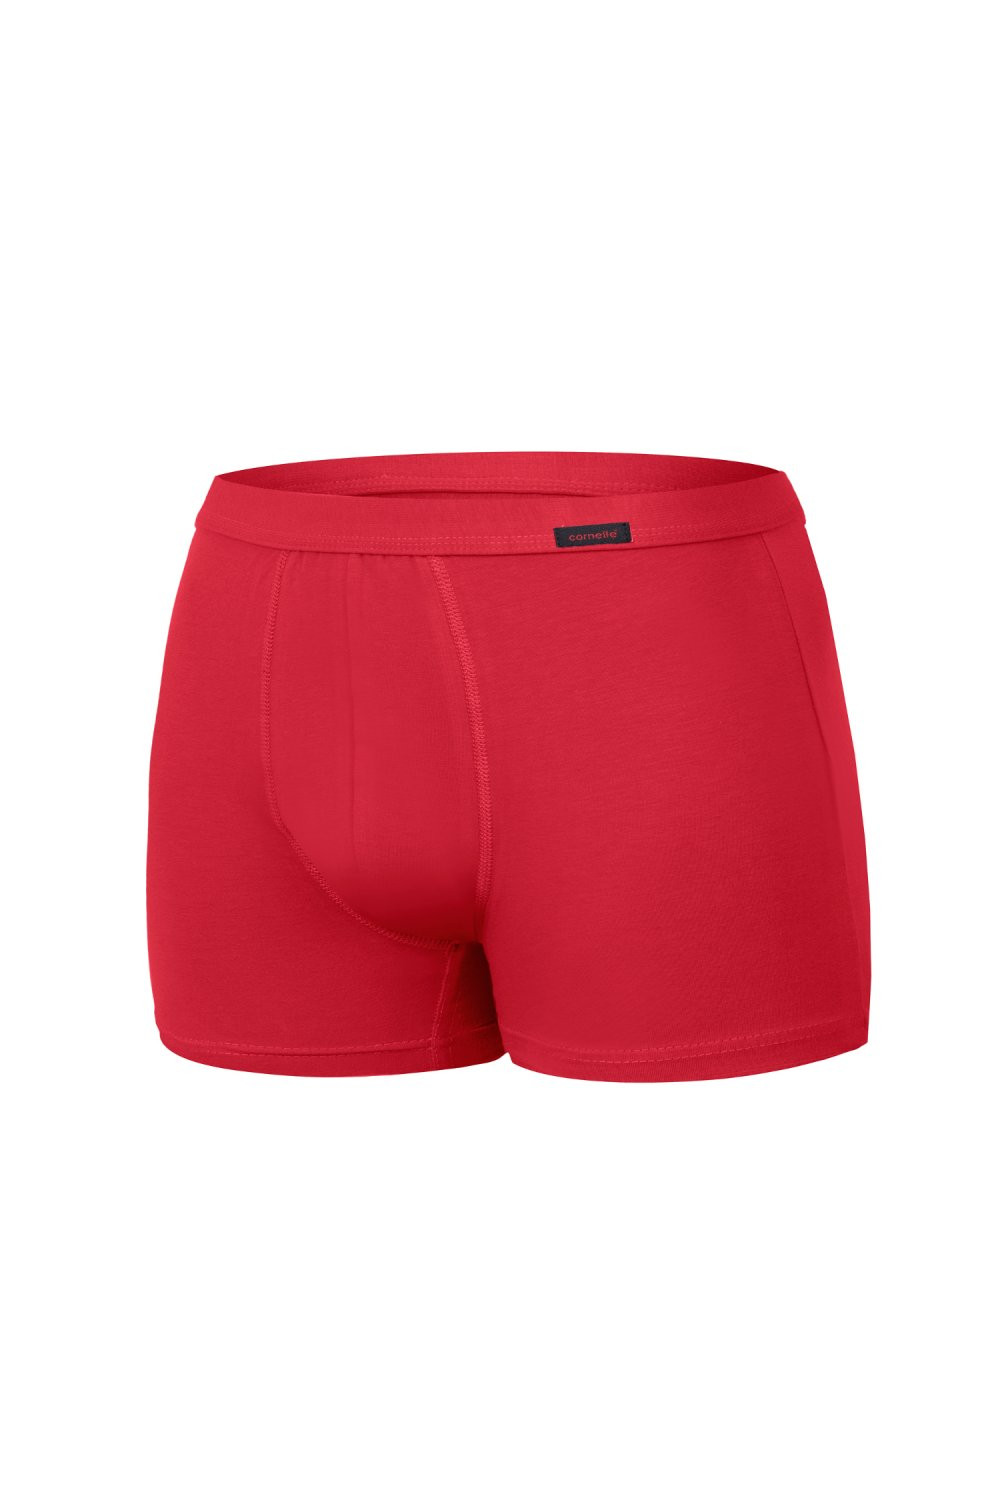 Pánské boxerky 223 Authentic mini red - CORNETTE Červená L